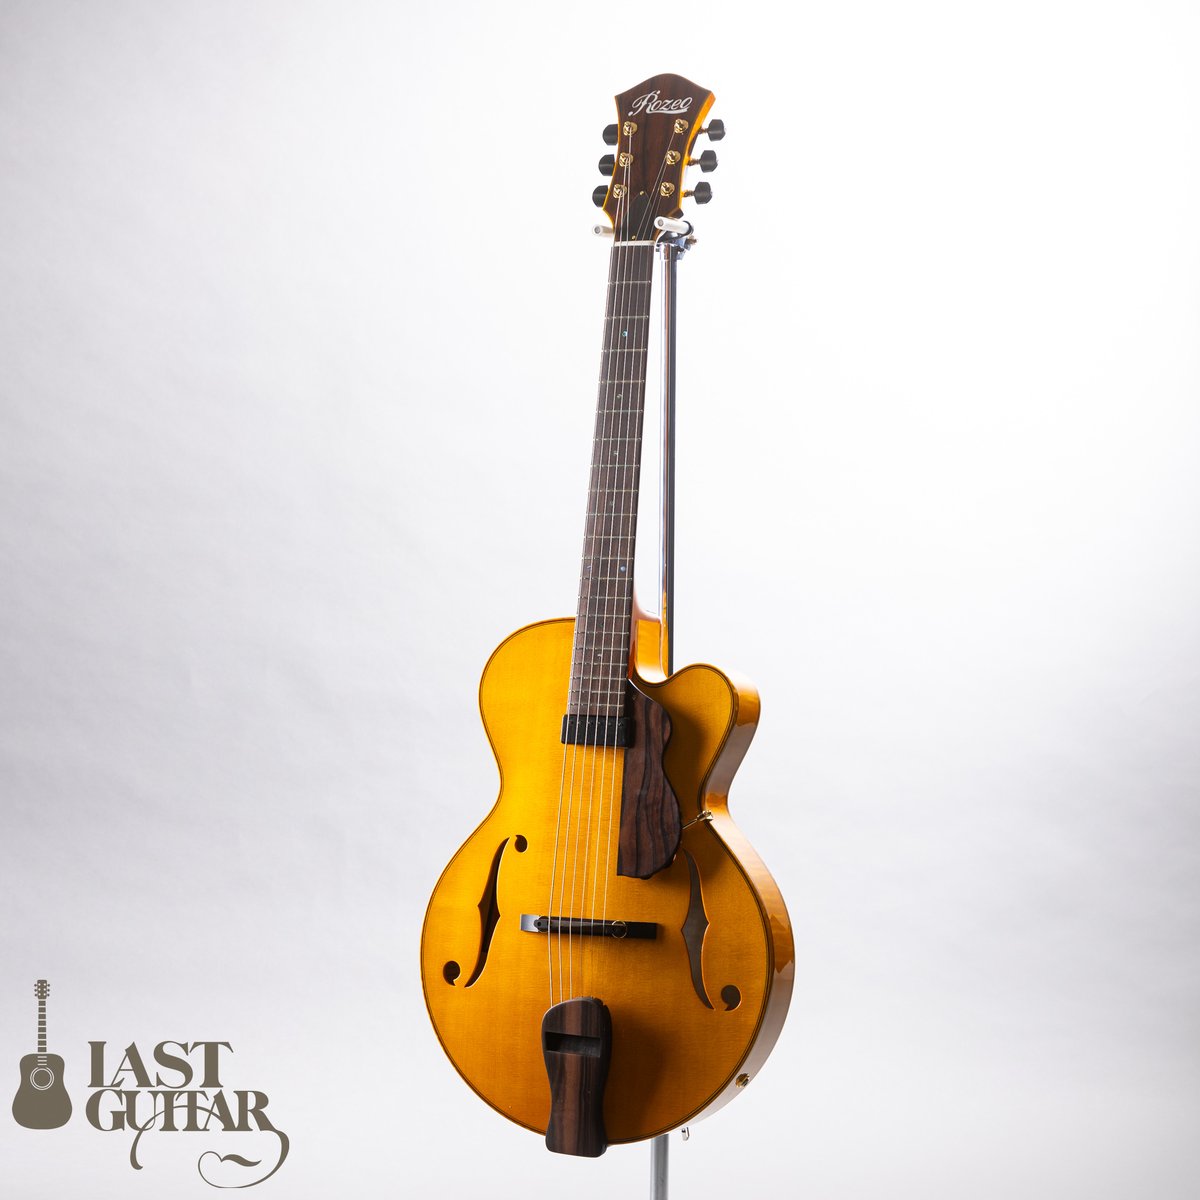 世界的に人気のギタリスト井草聖二さんが使用されているロゼオと同仕様のリミテッドモデルが待望の入荷です。 Rozeo Ladybug Ltd.SFM-C/SI lastguitar.com/?p=95839 #rozeoguitars #ロゼオギター #フルアコ